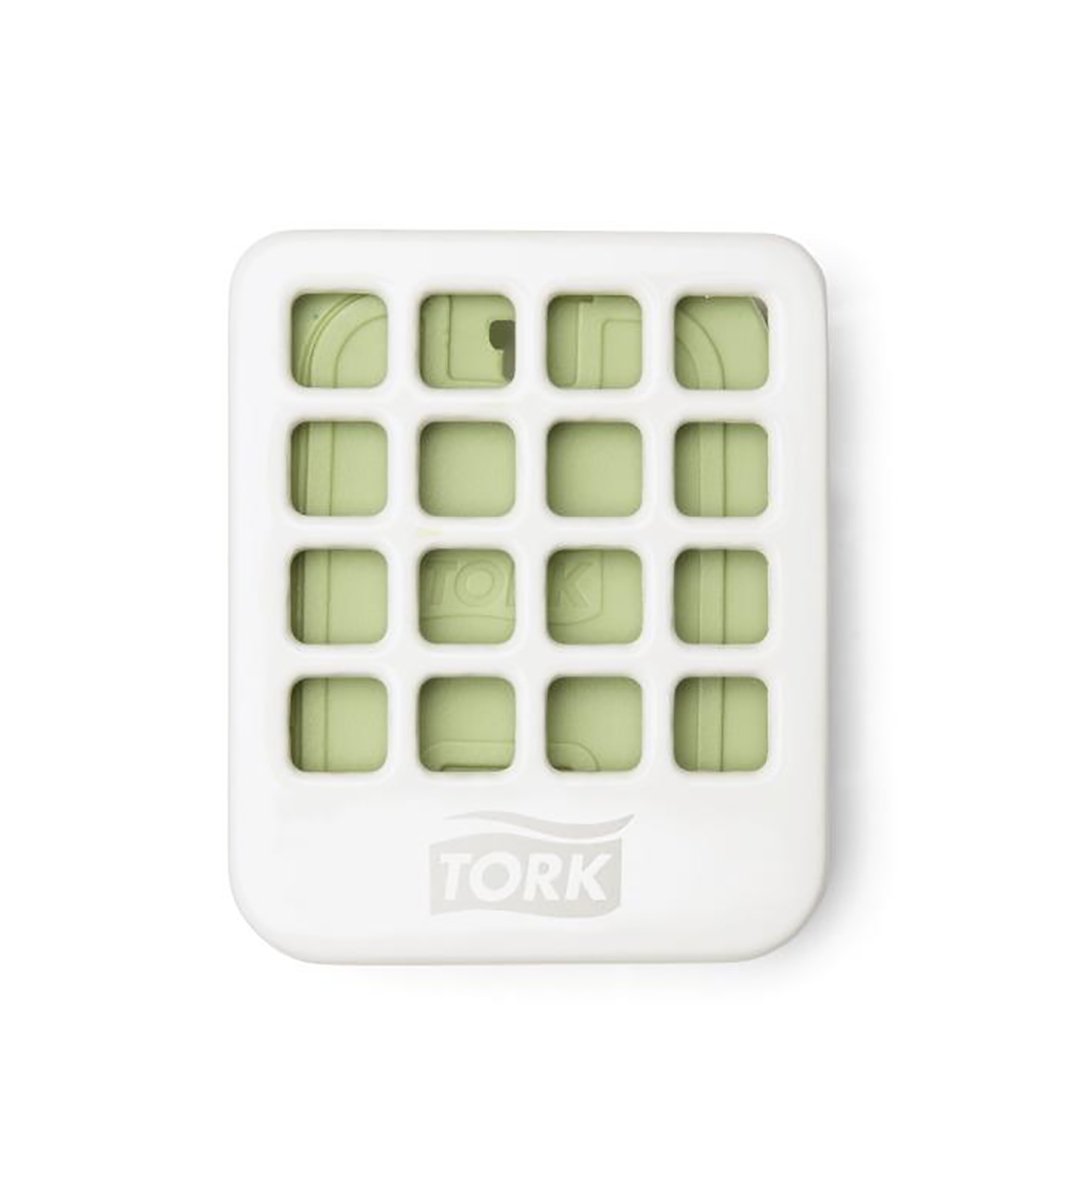 Dispenser Tork Air Freshener disk vit 51050073_1